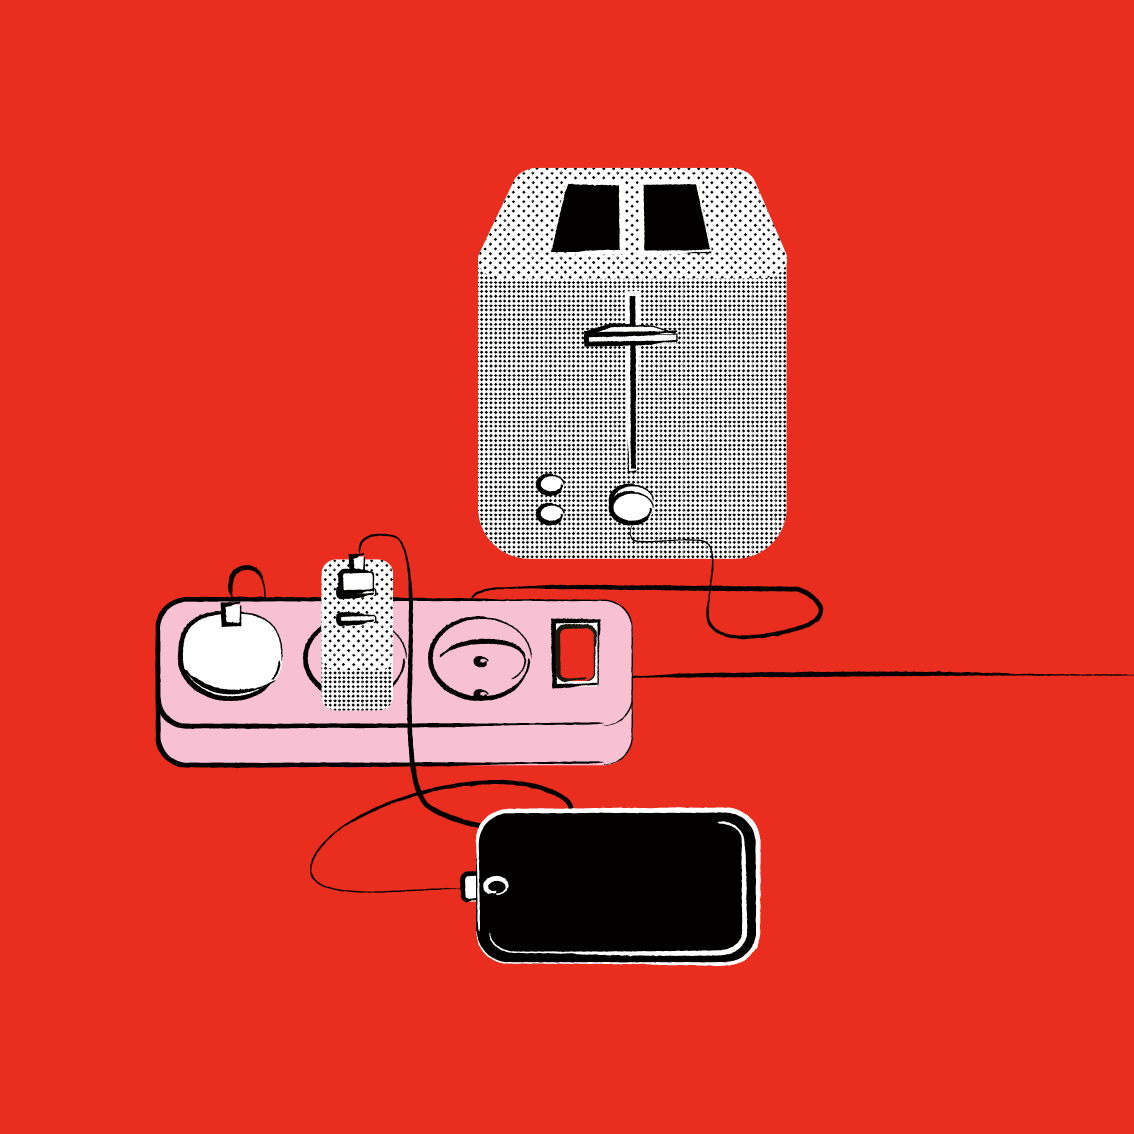 Technische Alltagsgegenstände - Toaster und Handy - die an eine Steckdose angeschlossen sind